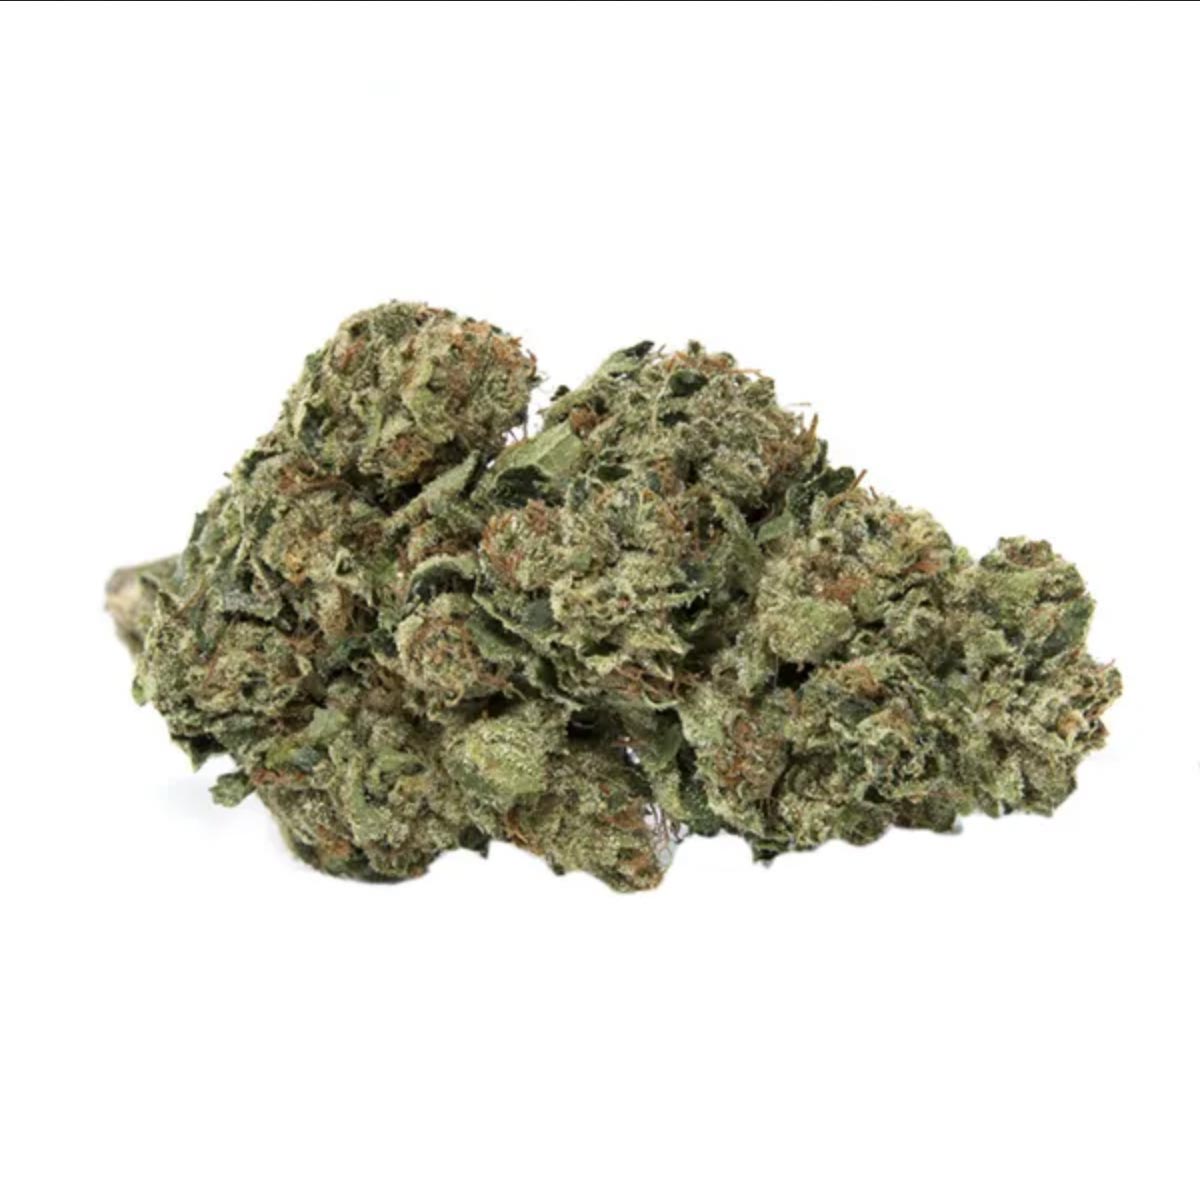 Lambo OG Hybrid marijuana strain from hotgrass.ca